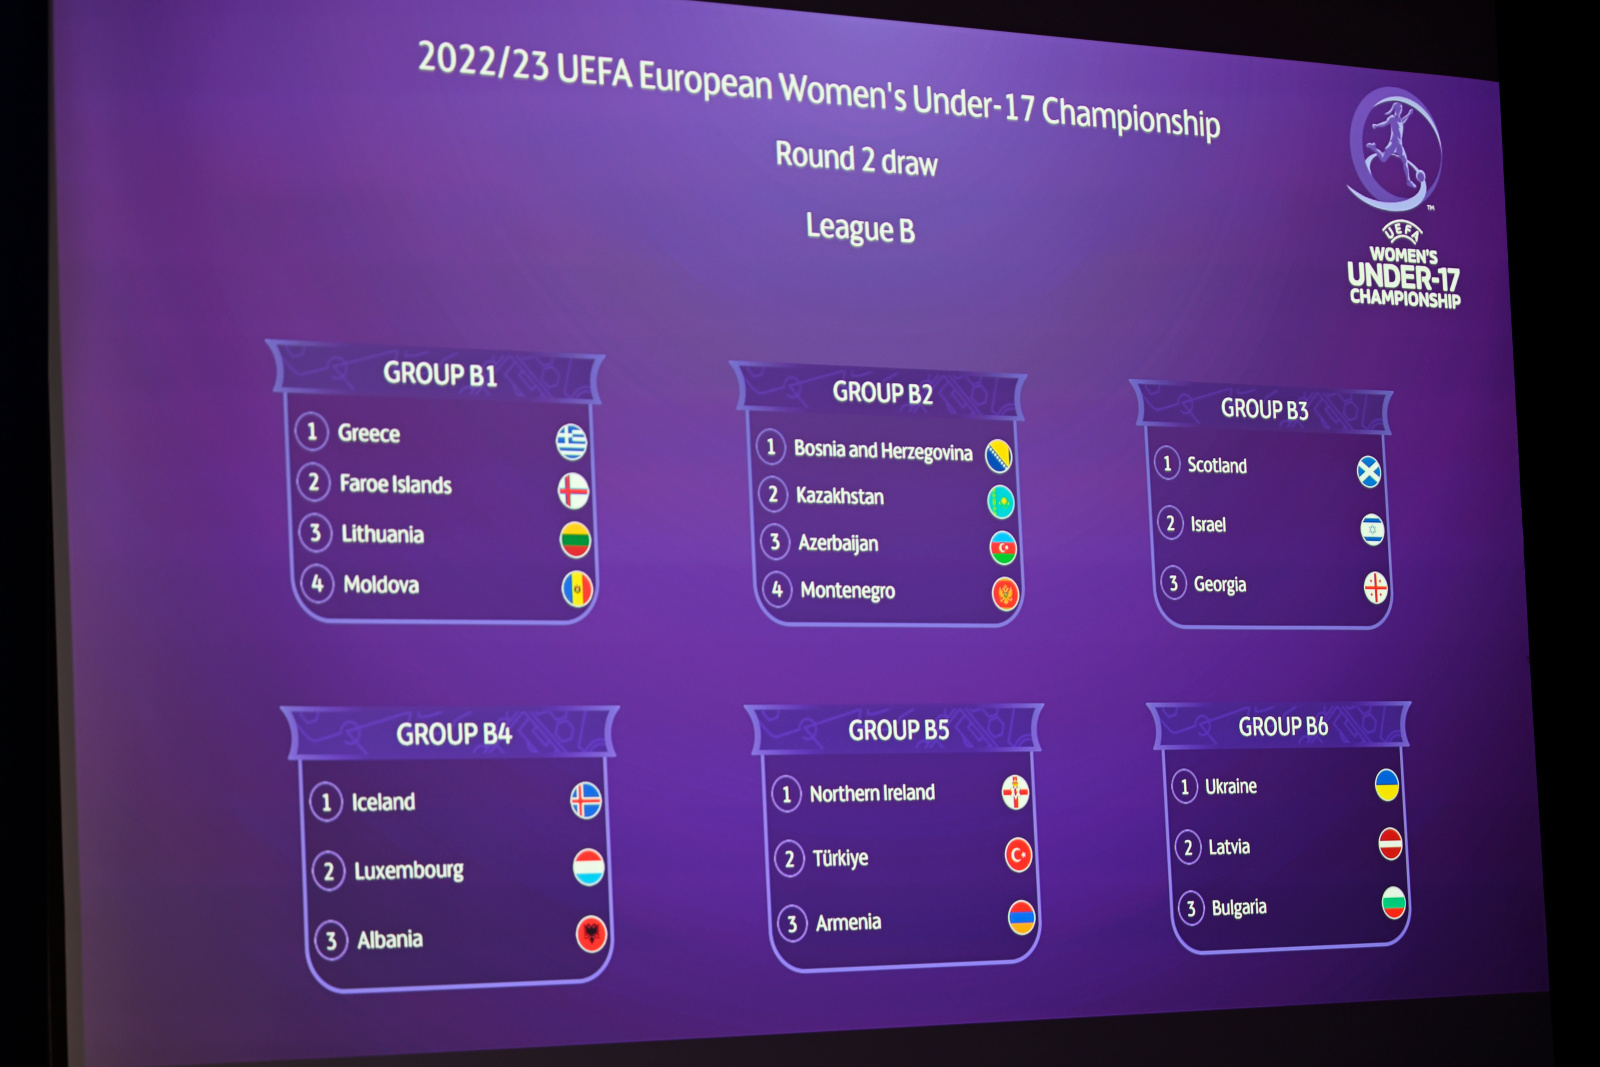 UEFA European Womens Under-17 Championship 2022/23 Round 2 Draw